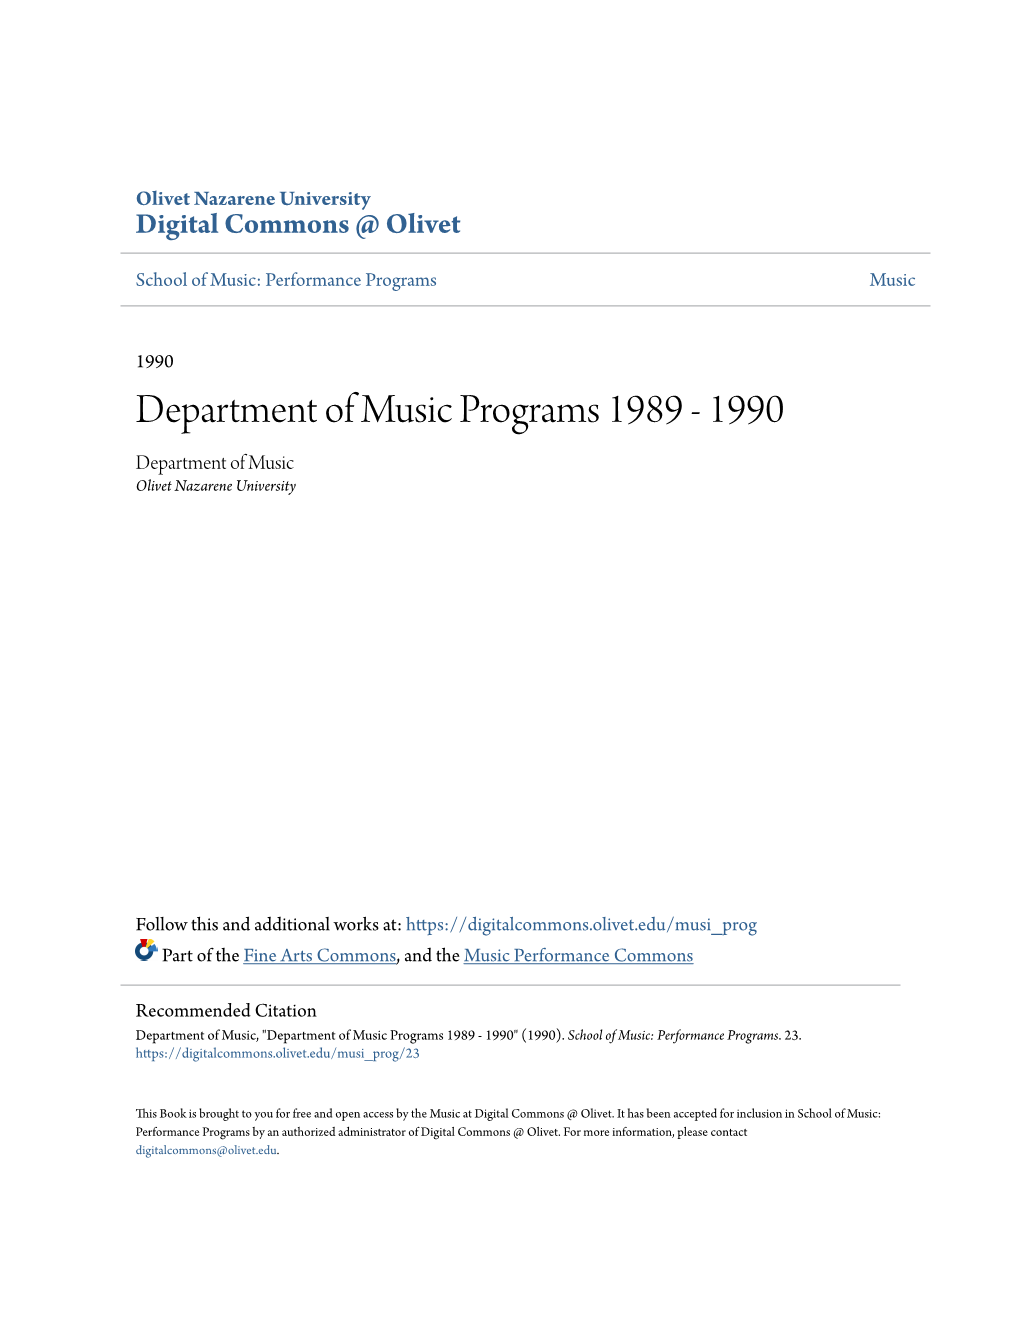 Department of Music Programs 1989 - 1990 Department of Music Olivet Nazarene University